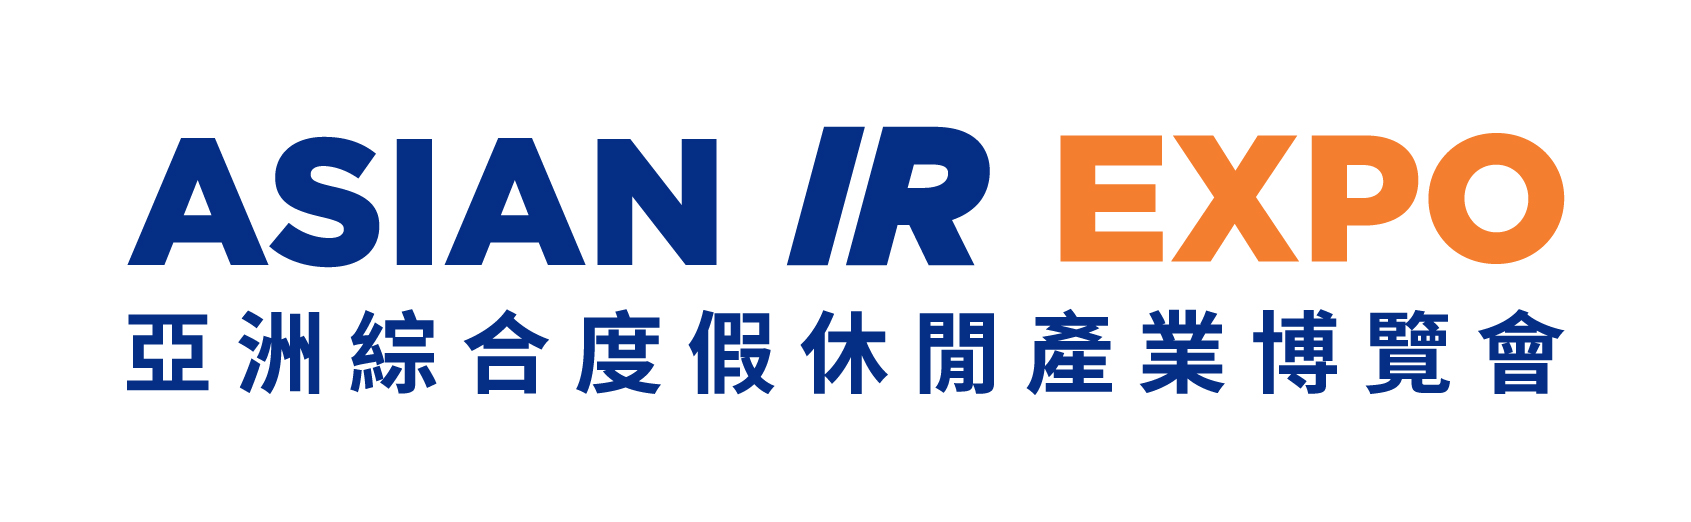 Asian IR Expo